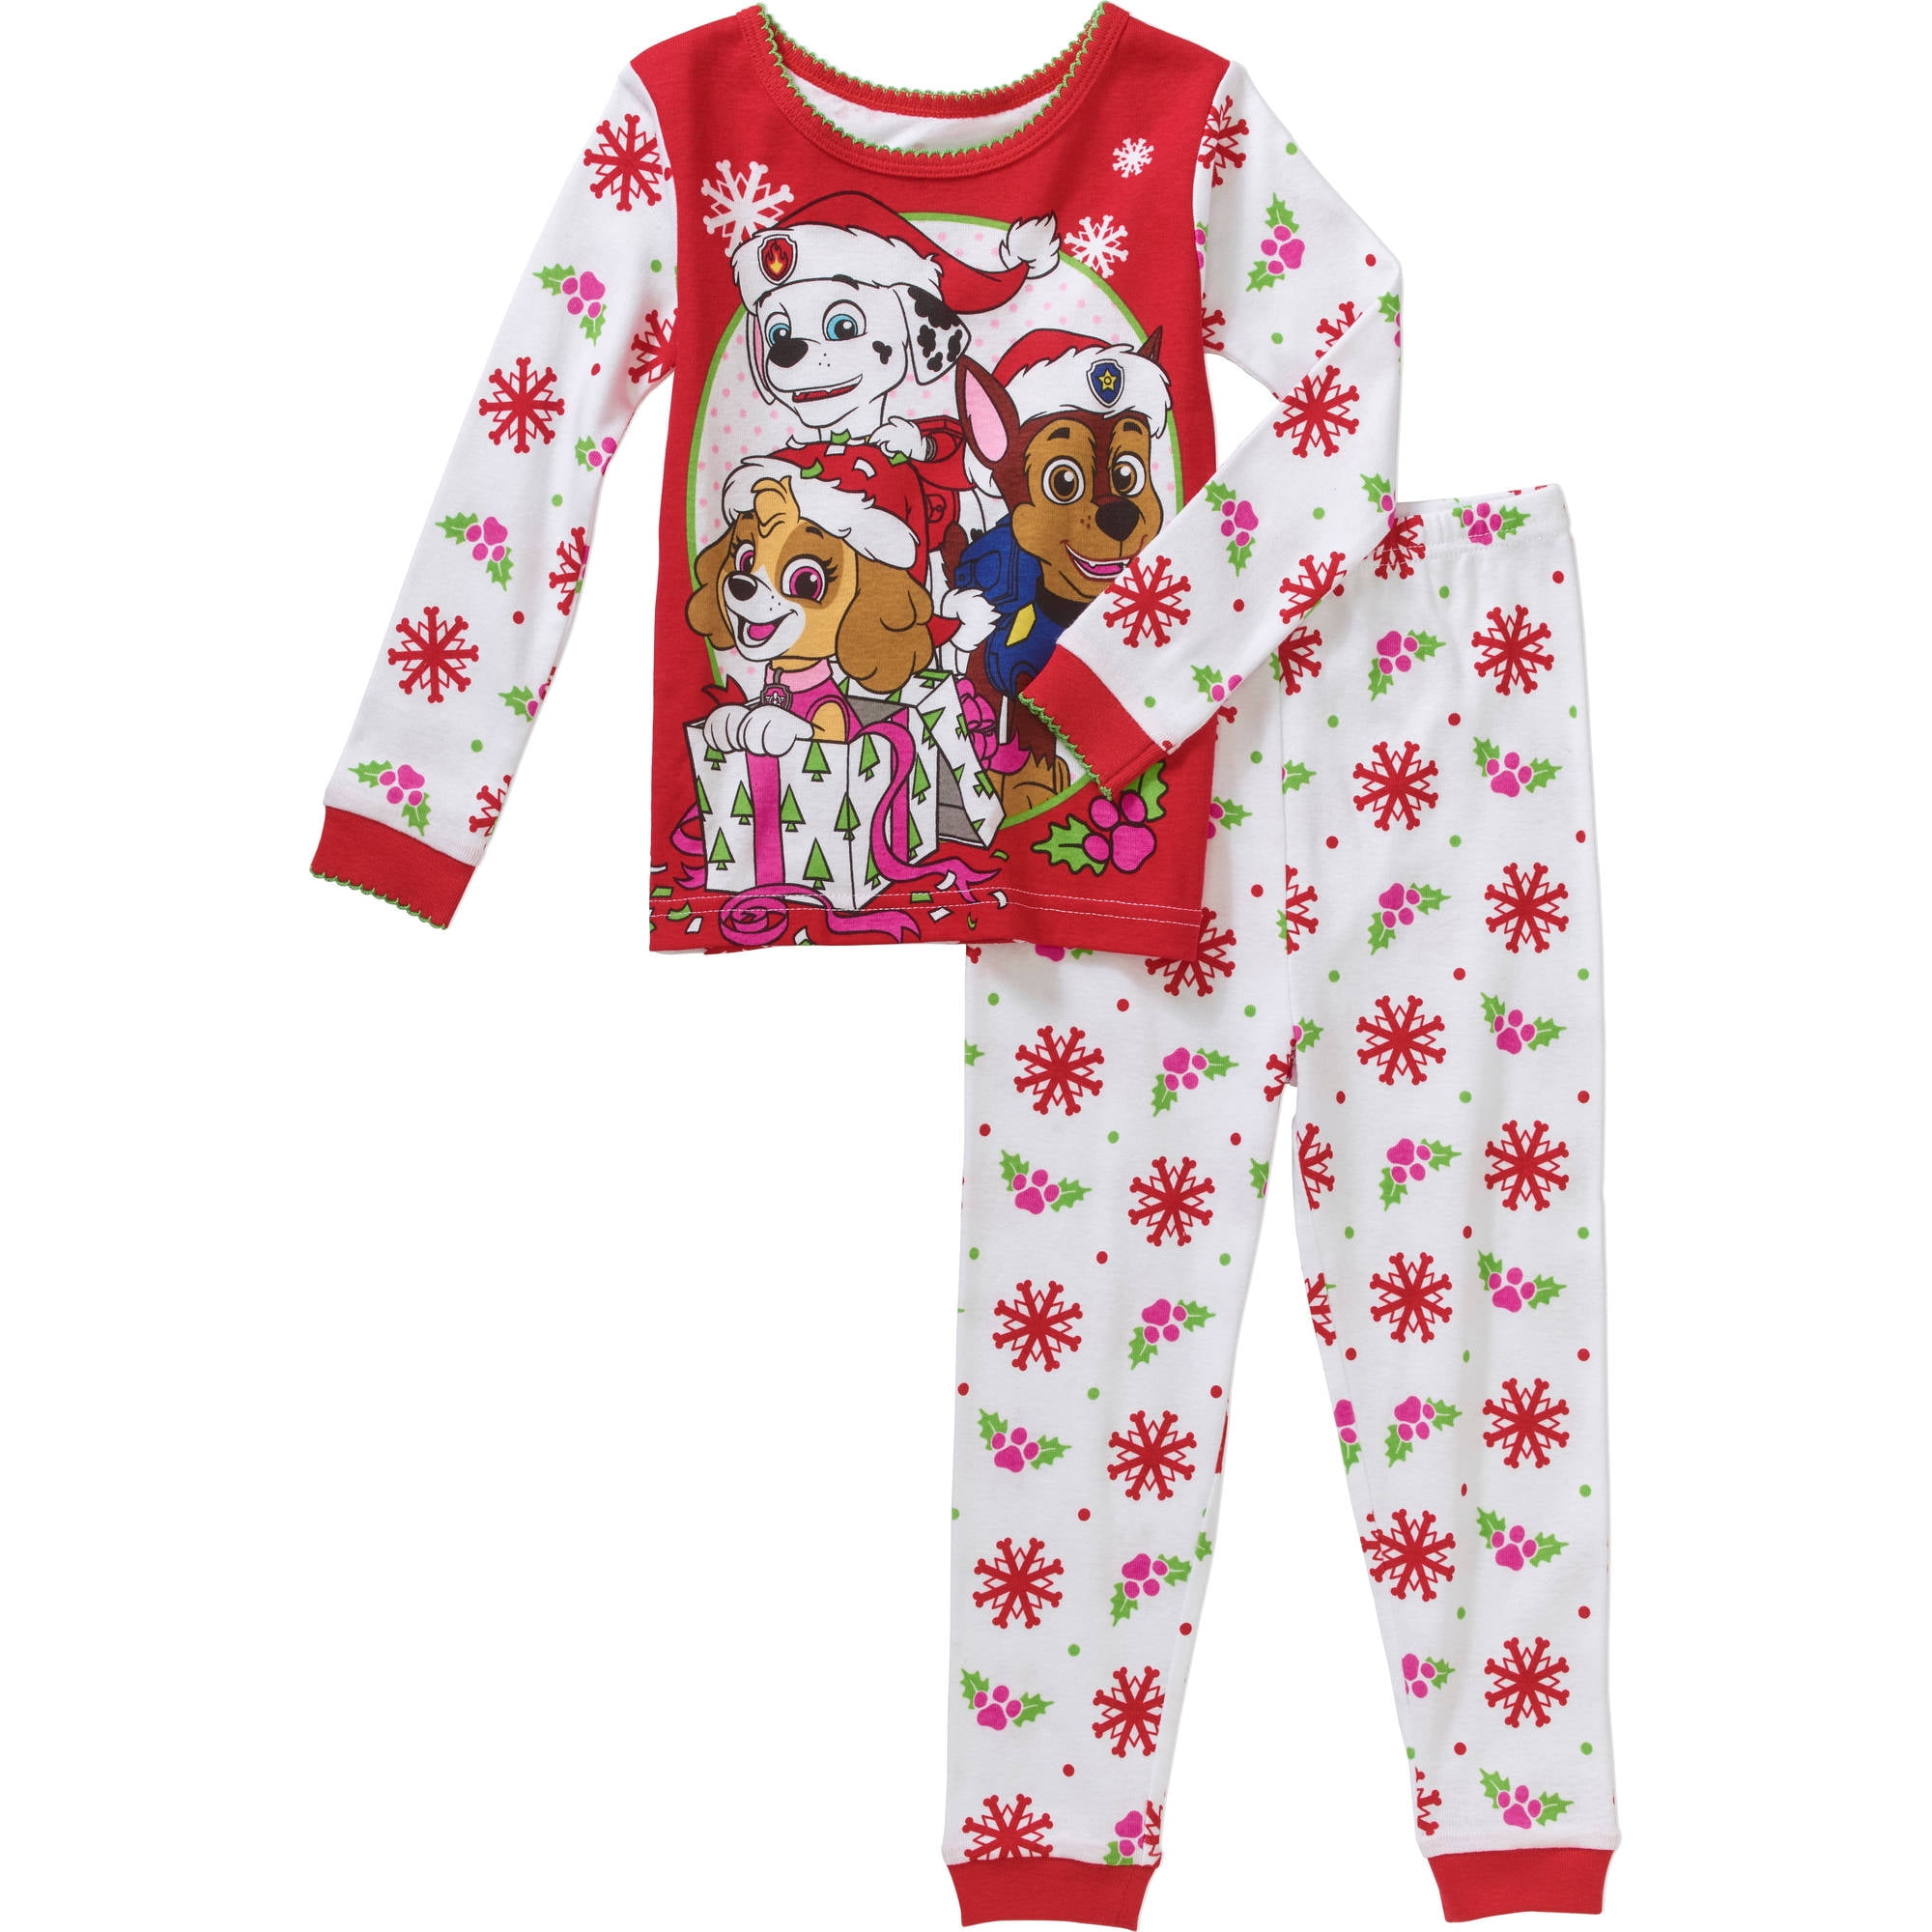 Paw Christmas Holiday Pajamas Sleepwear - Walmart.com